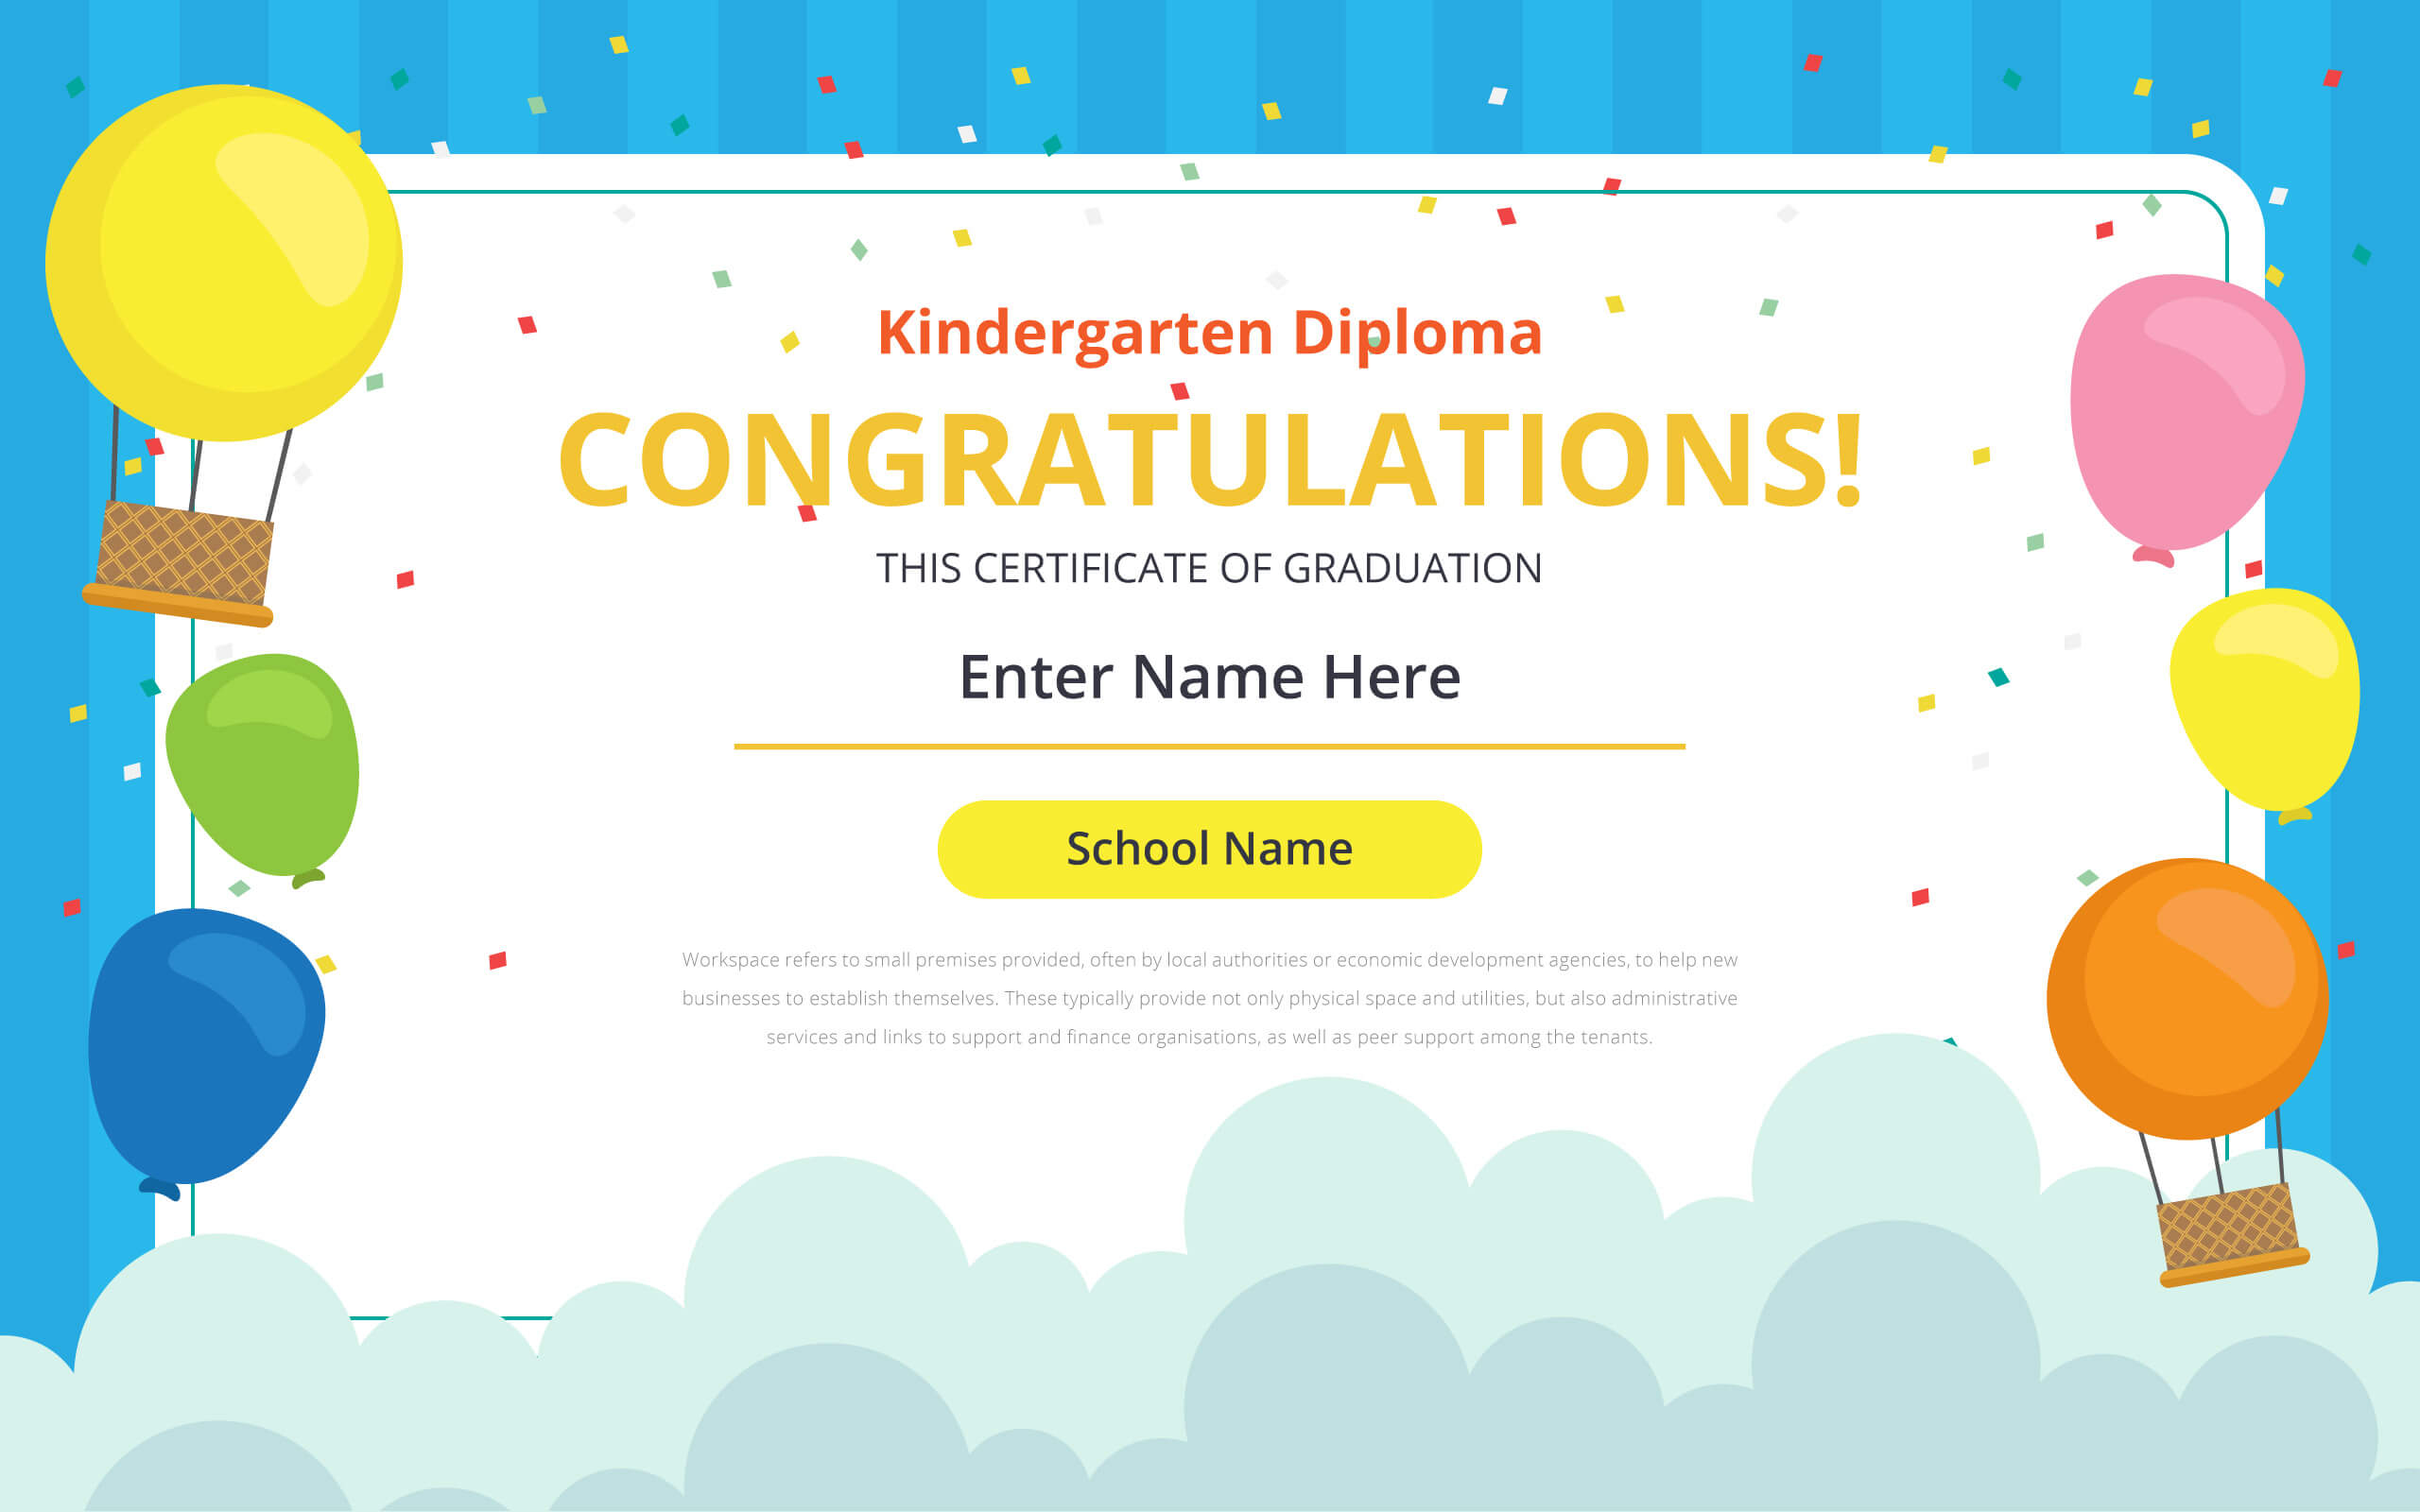 Kindergarten Certificate Free Vector Art – (21 Free Downloads) With Regard To Free School Certificate Templates